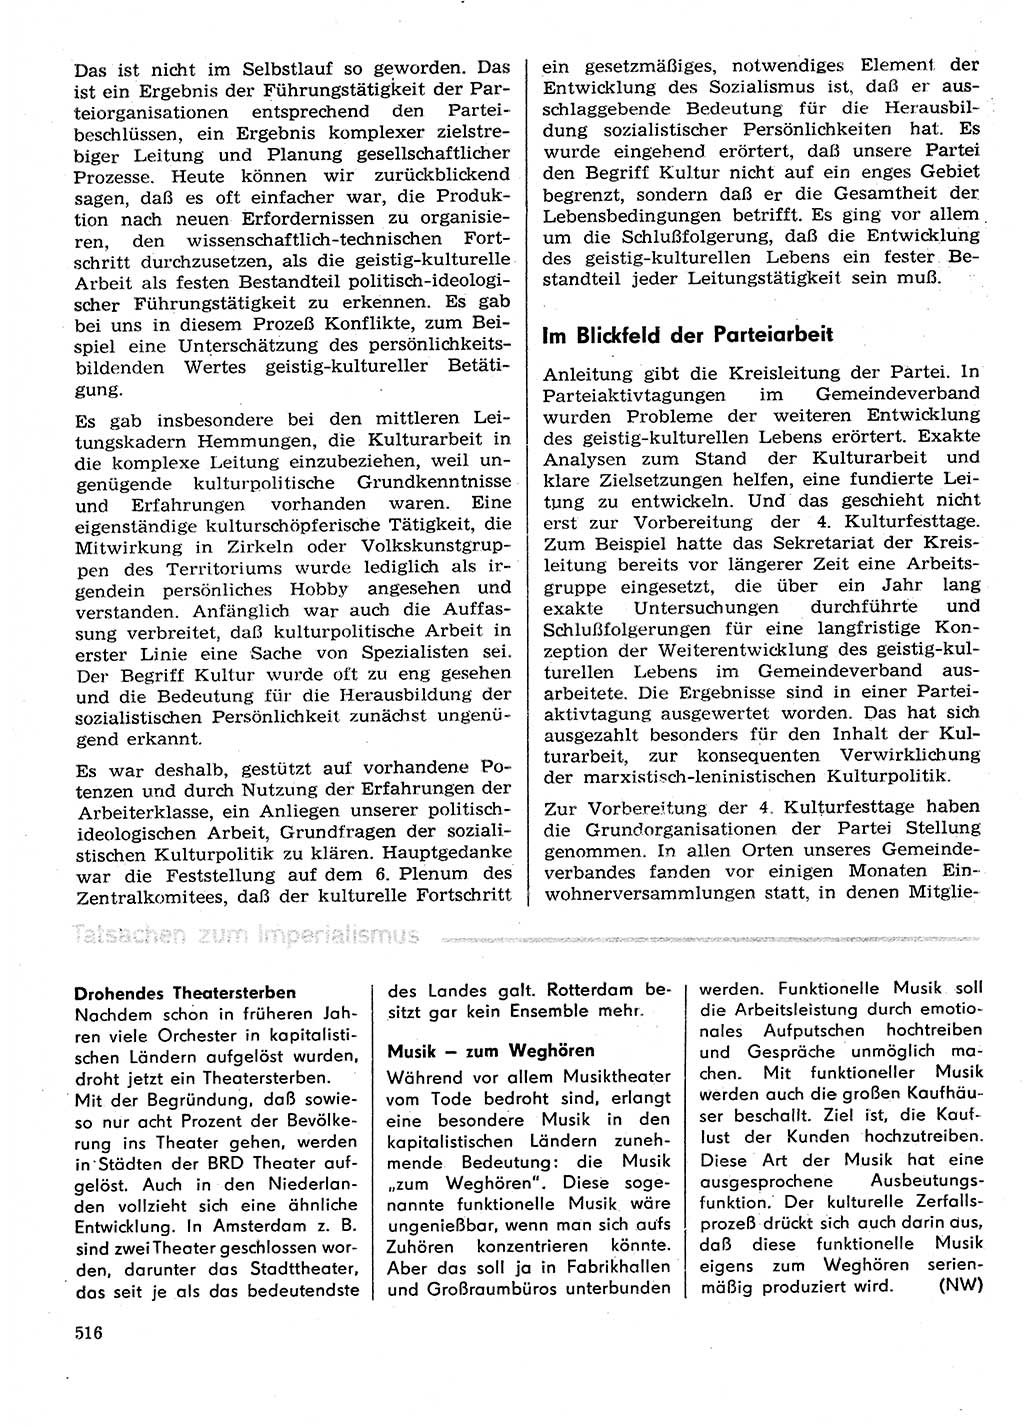 Neuer Weg (NW), Organ des Zentralkomitees (ZK) der SED (Sozialistische Einheitspartei Deutschlands) für Fragen des Parteilebens, 29. Jahrgang [Deutsche Demokratische Republik (DDR)] 1974, Seite 516 (NW ZK SED DDR 1974, S. 516)